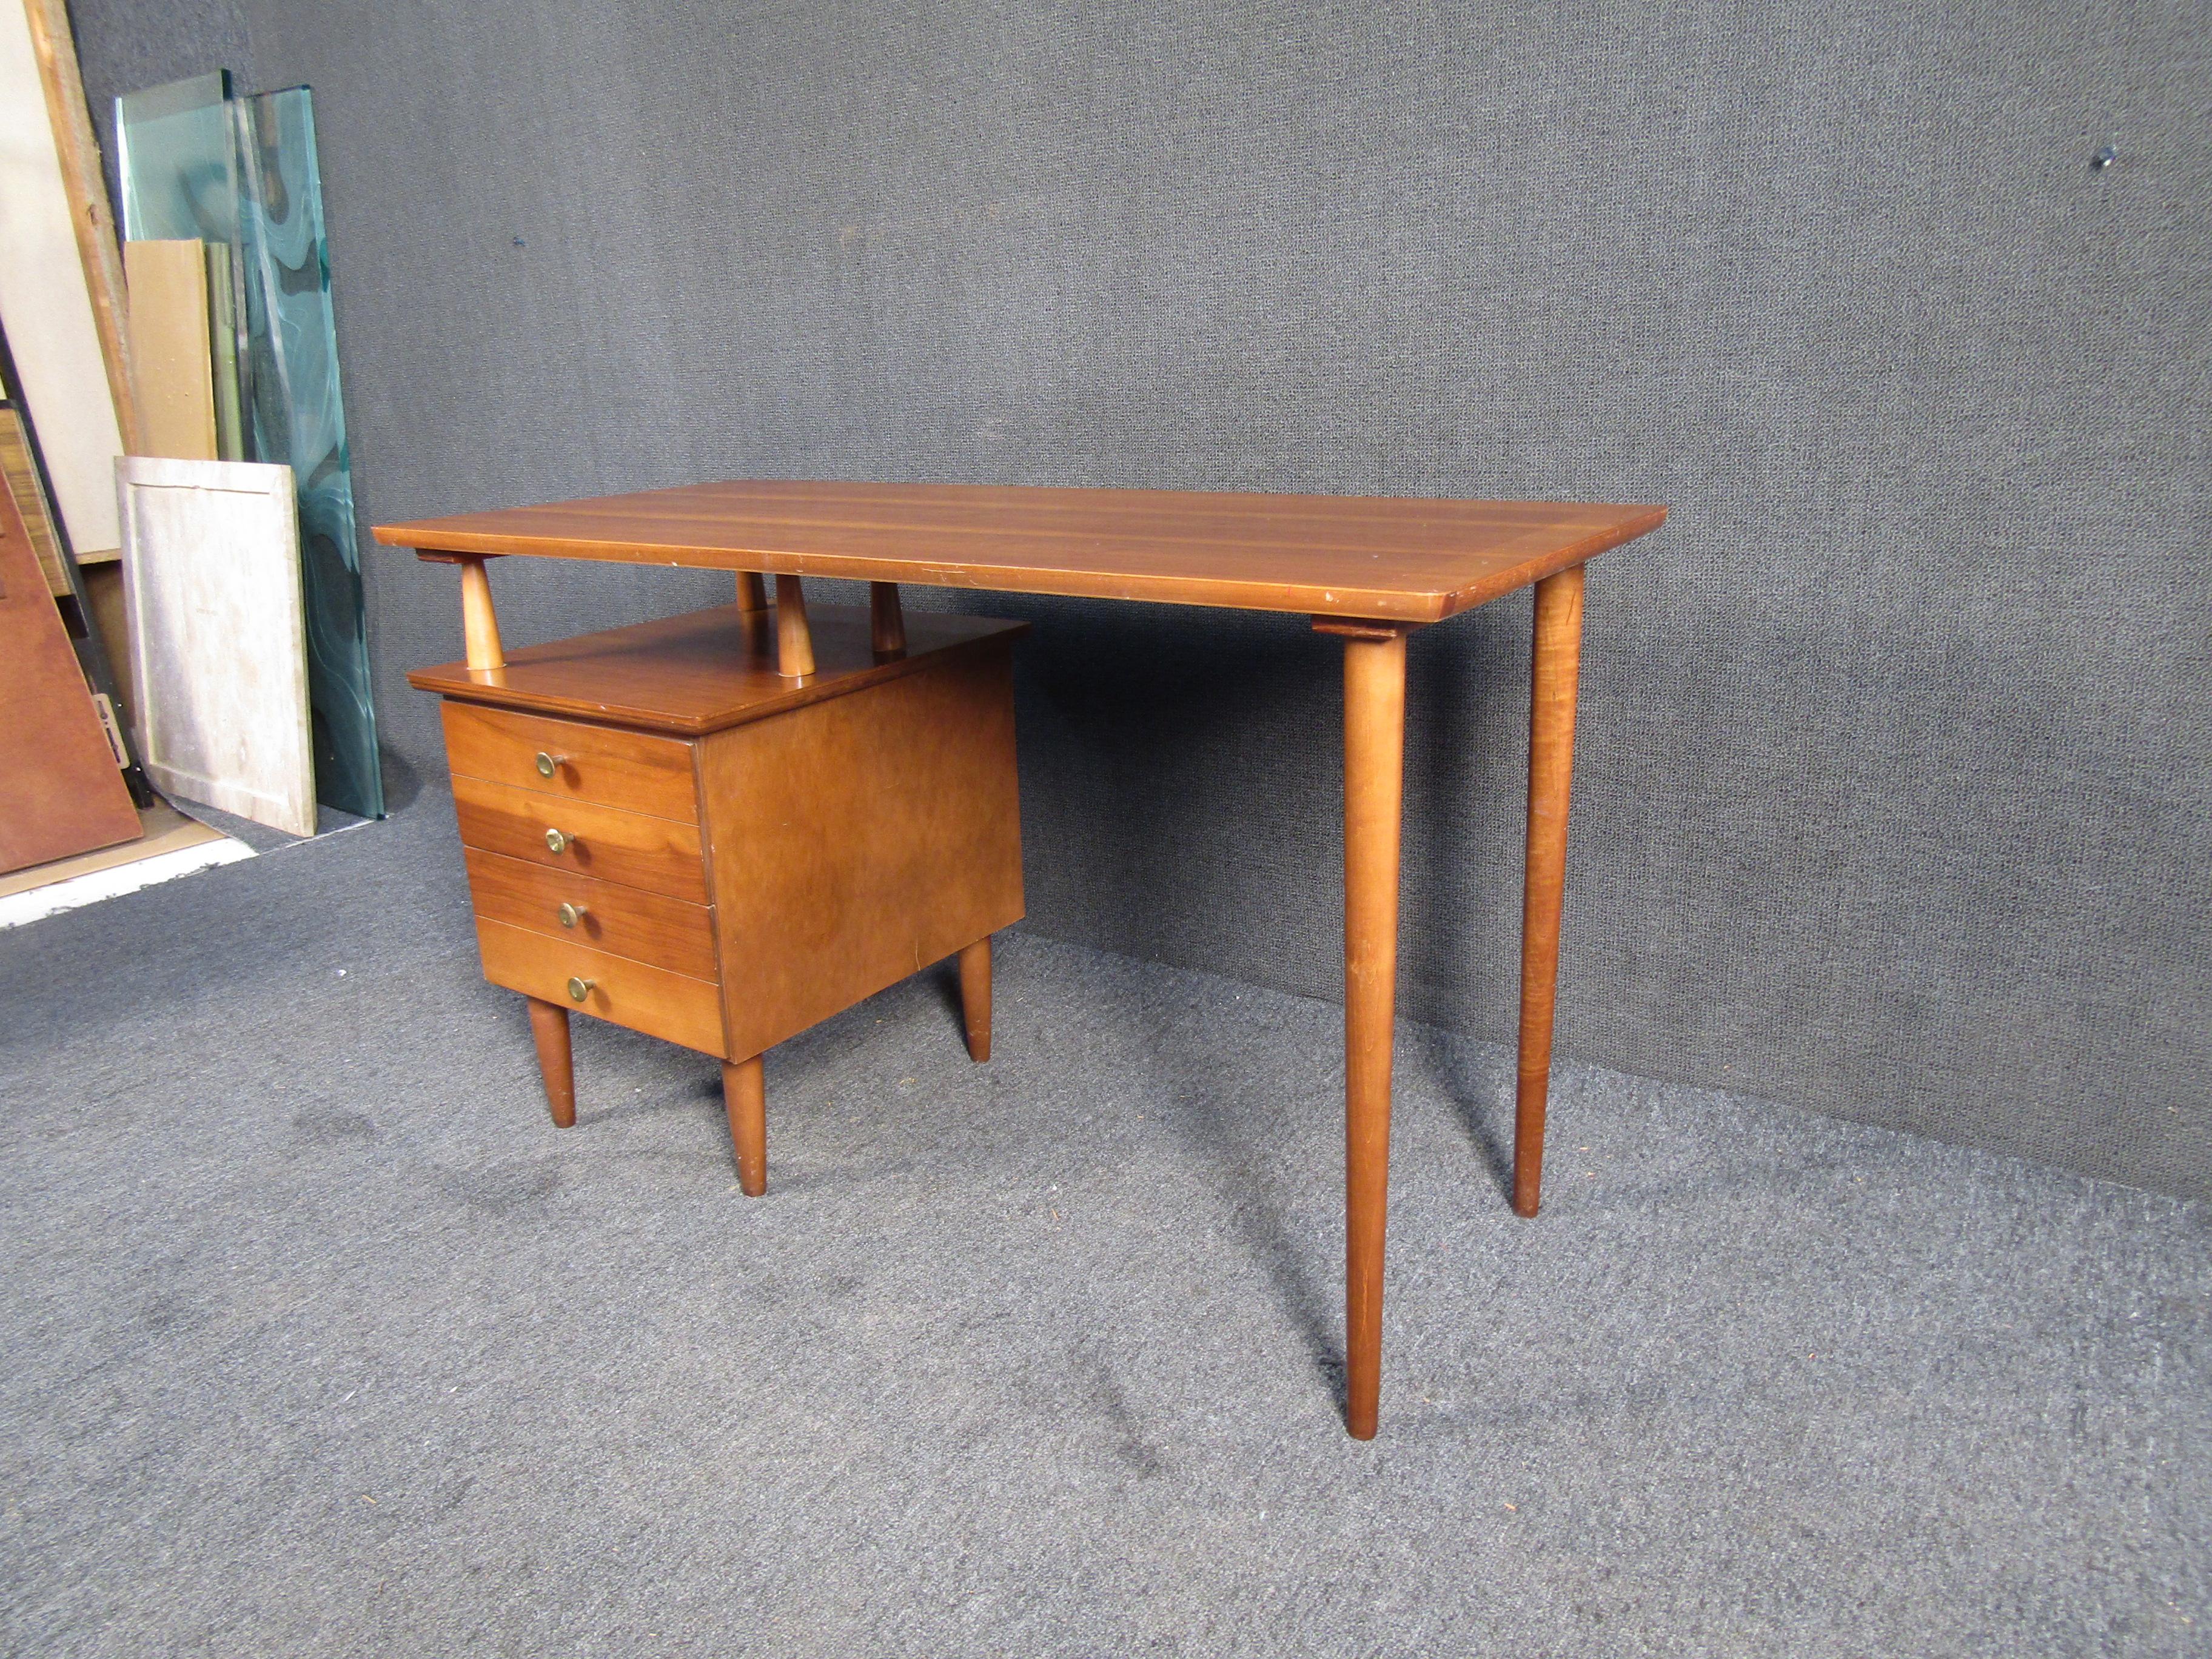 Moderner Schreibtisch im Vintage-Stil mit reicher Walnussmaserung. Dieser Schreibtisch steht auf schlanken, spitz zulaufenden Beinen und hat zwei geräumige Schubladen. Dies wäre eine perfekte Ergänzung für jeden kreativen Raum.

Bitte bestätigen